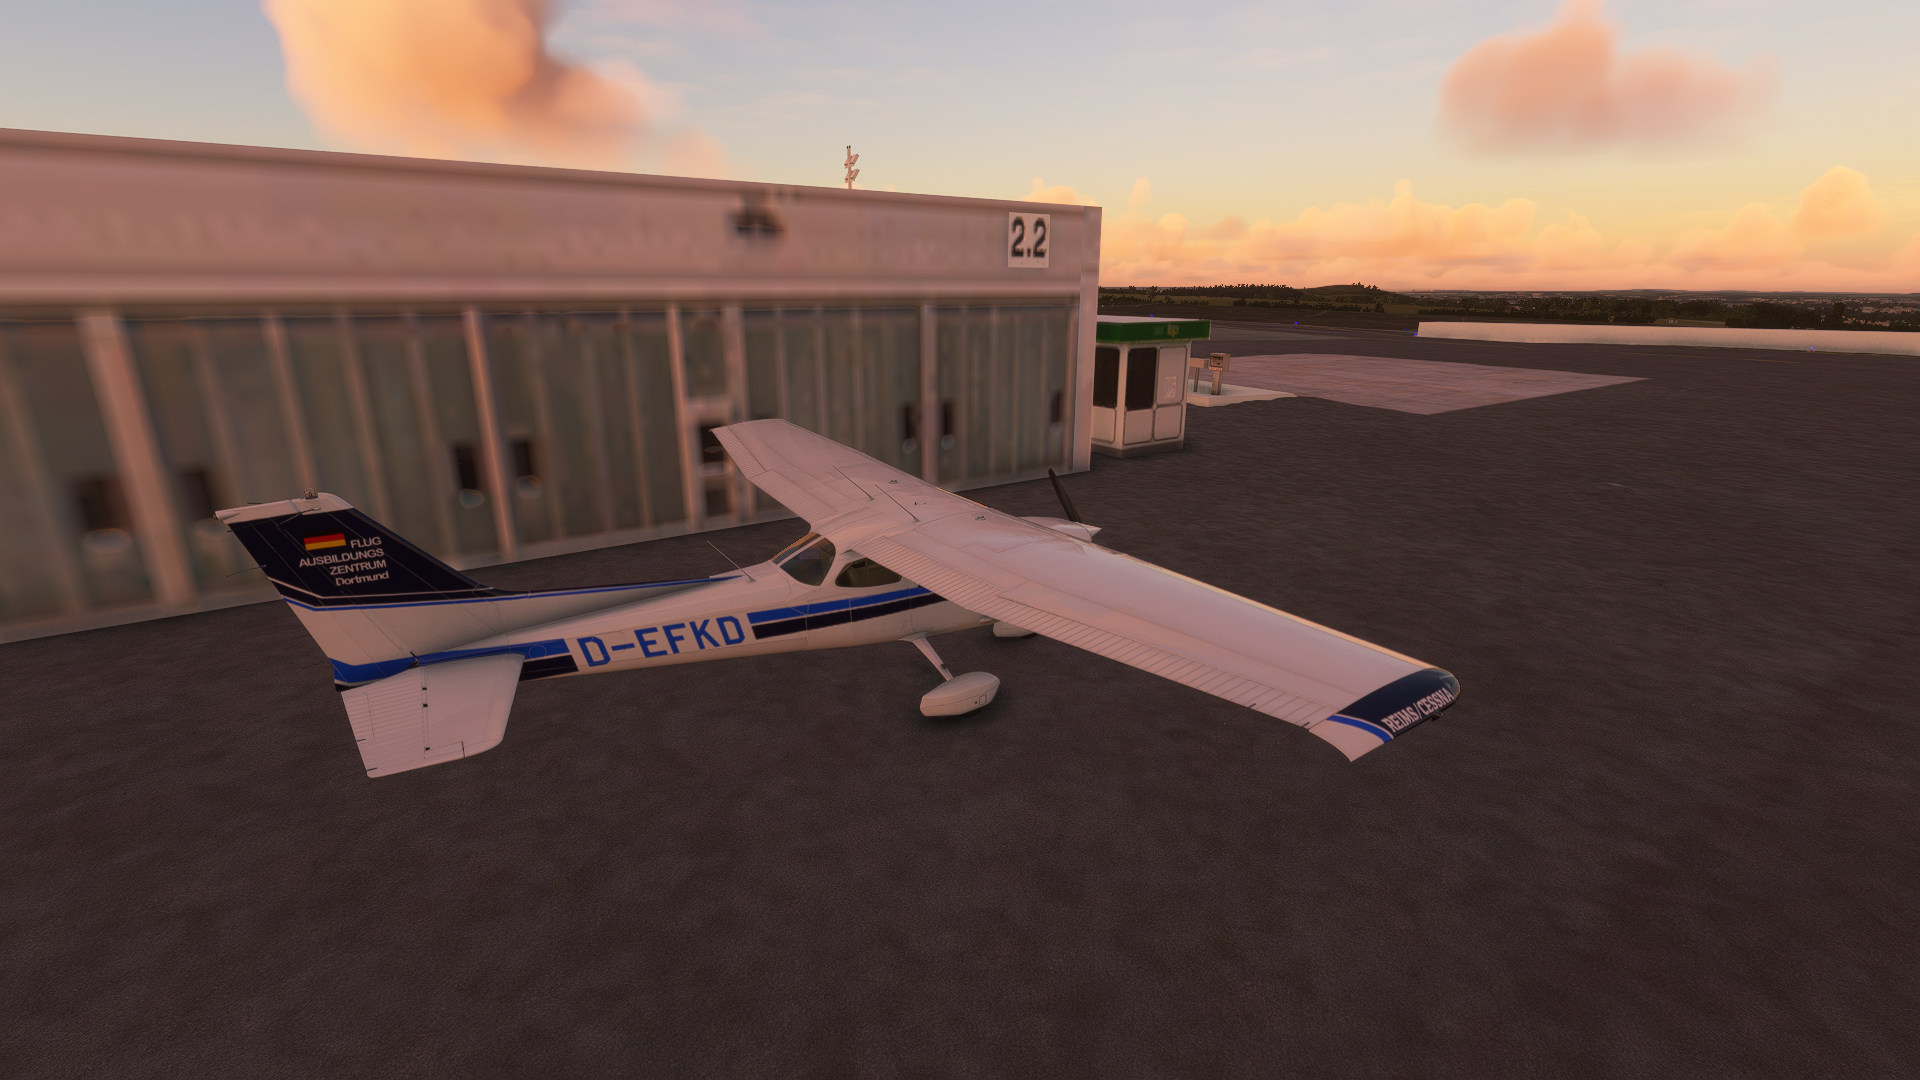 D-EFKD am Hangar 2.2 EDLW.png